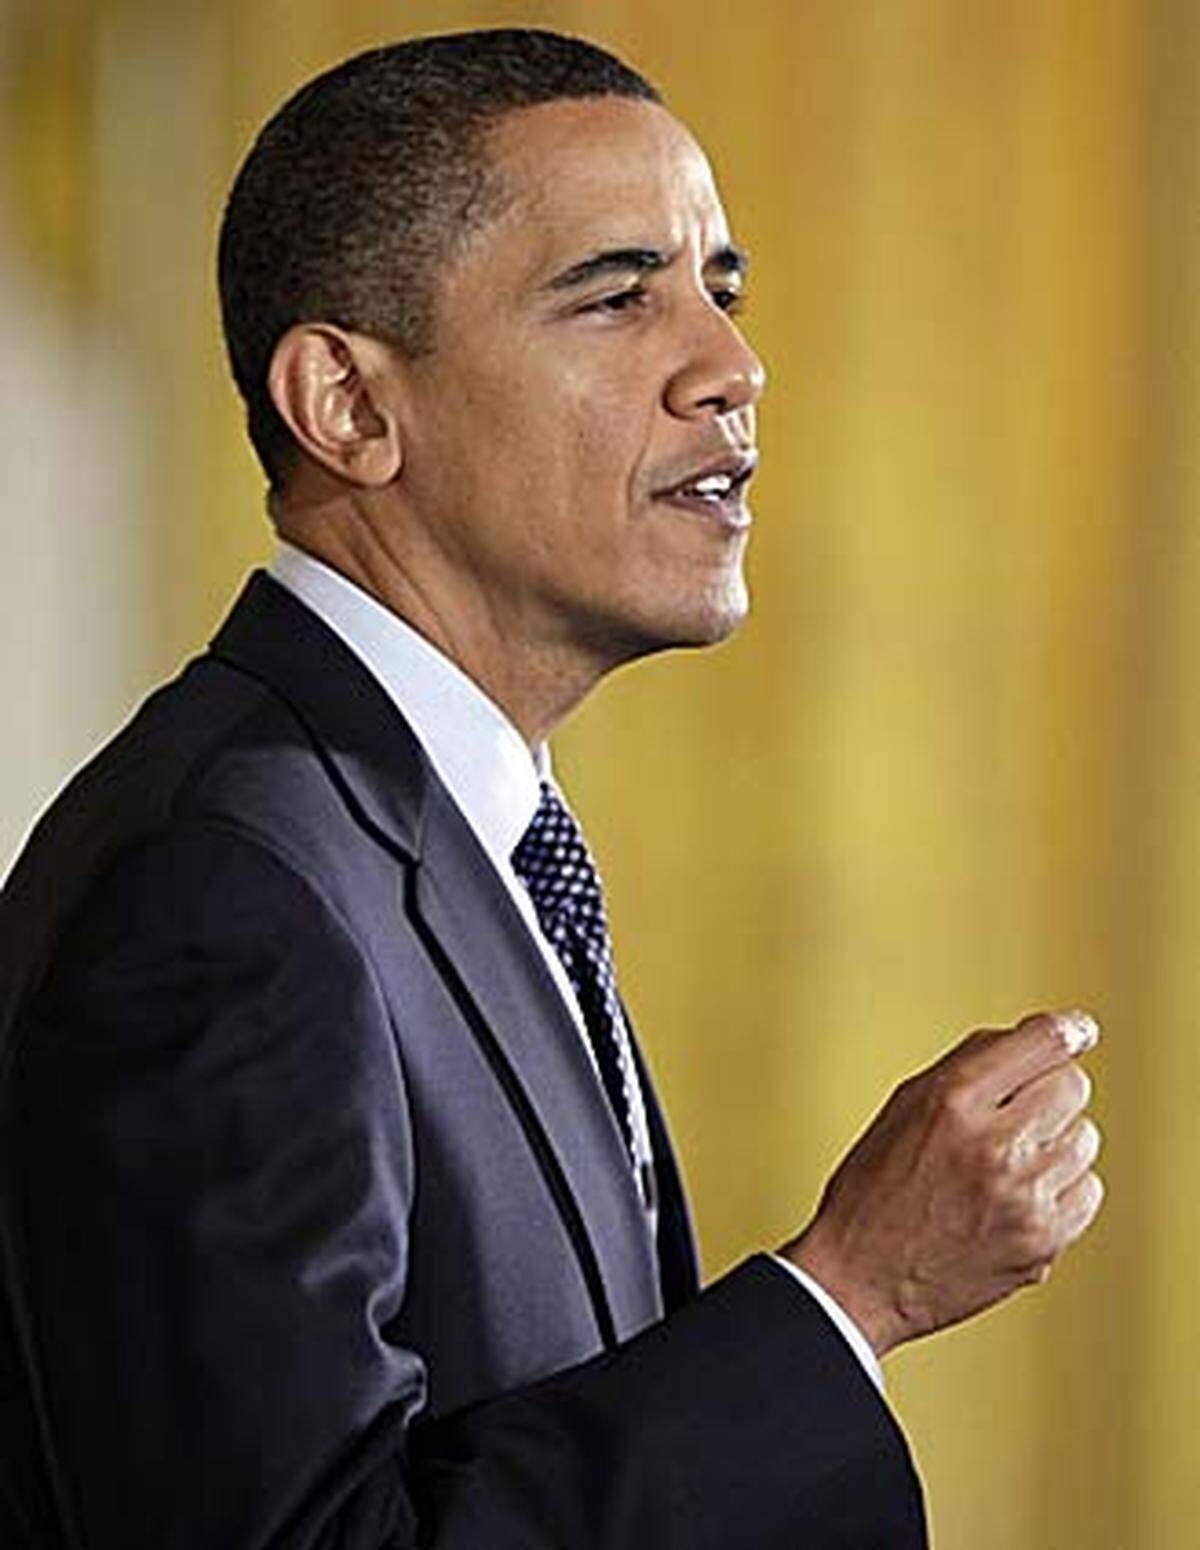 Überraschend hat der amtierende US-Präsident Barack Obama den Friedensnobelpreis gewonnen. In der Begründung der Jury hieß es, er habe ein neues Klima in der Weltpolitik geschaffen.